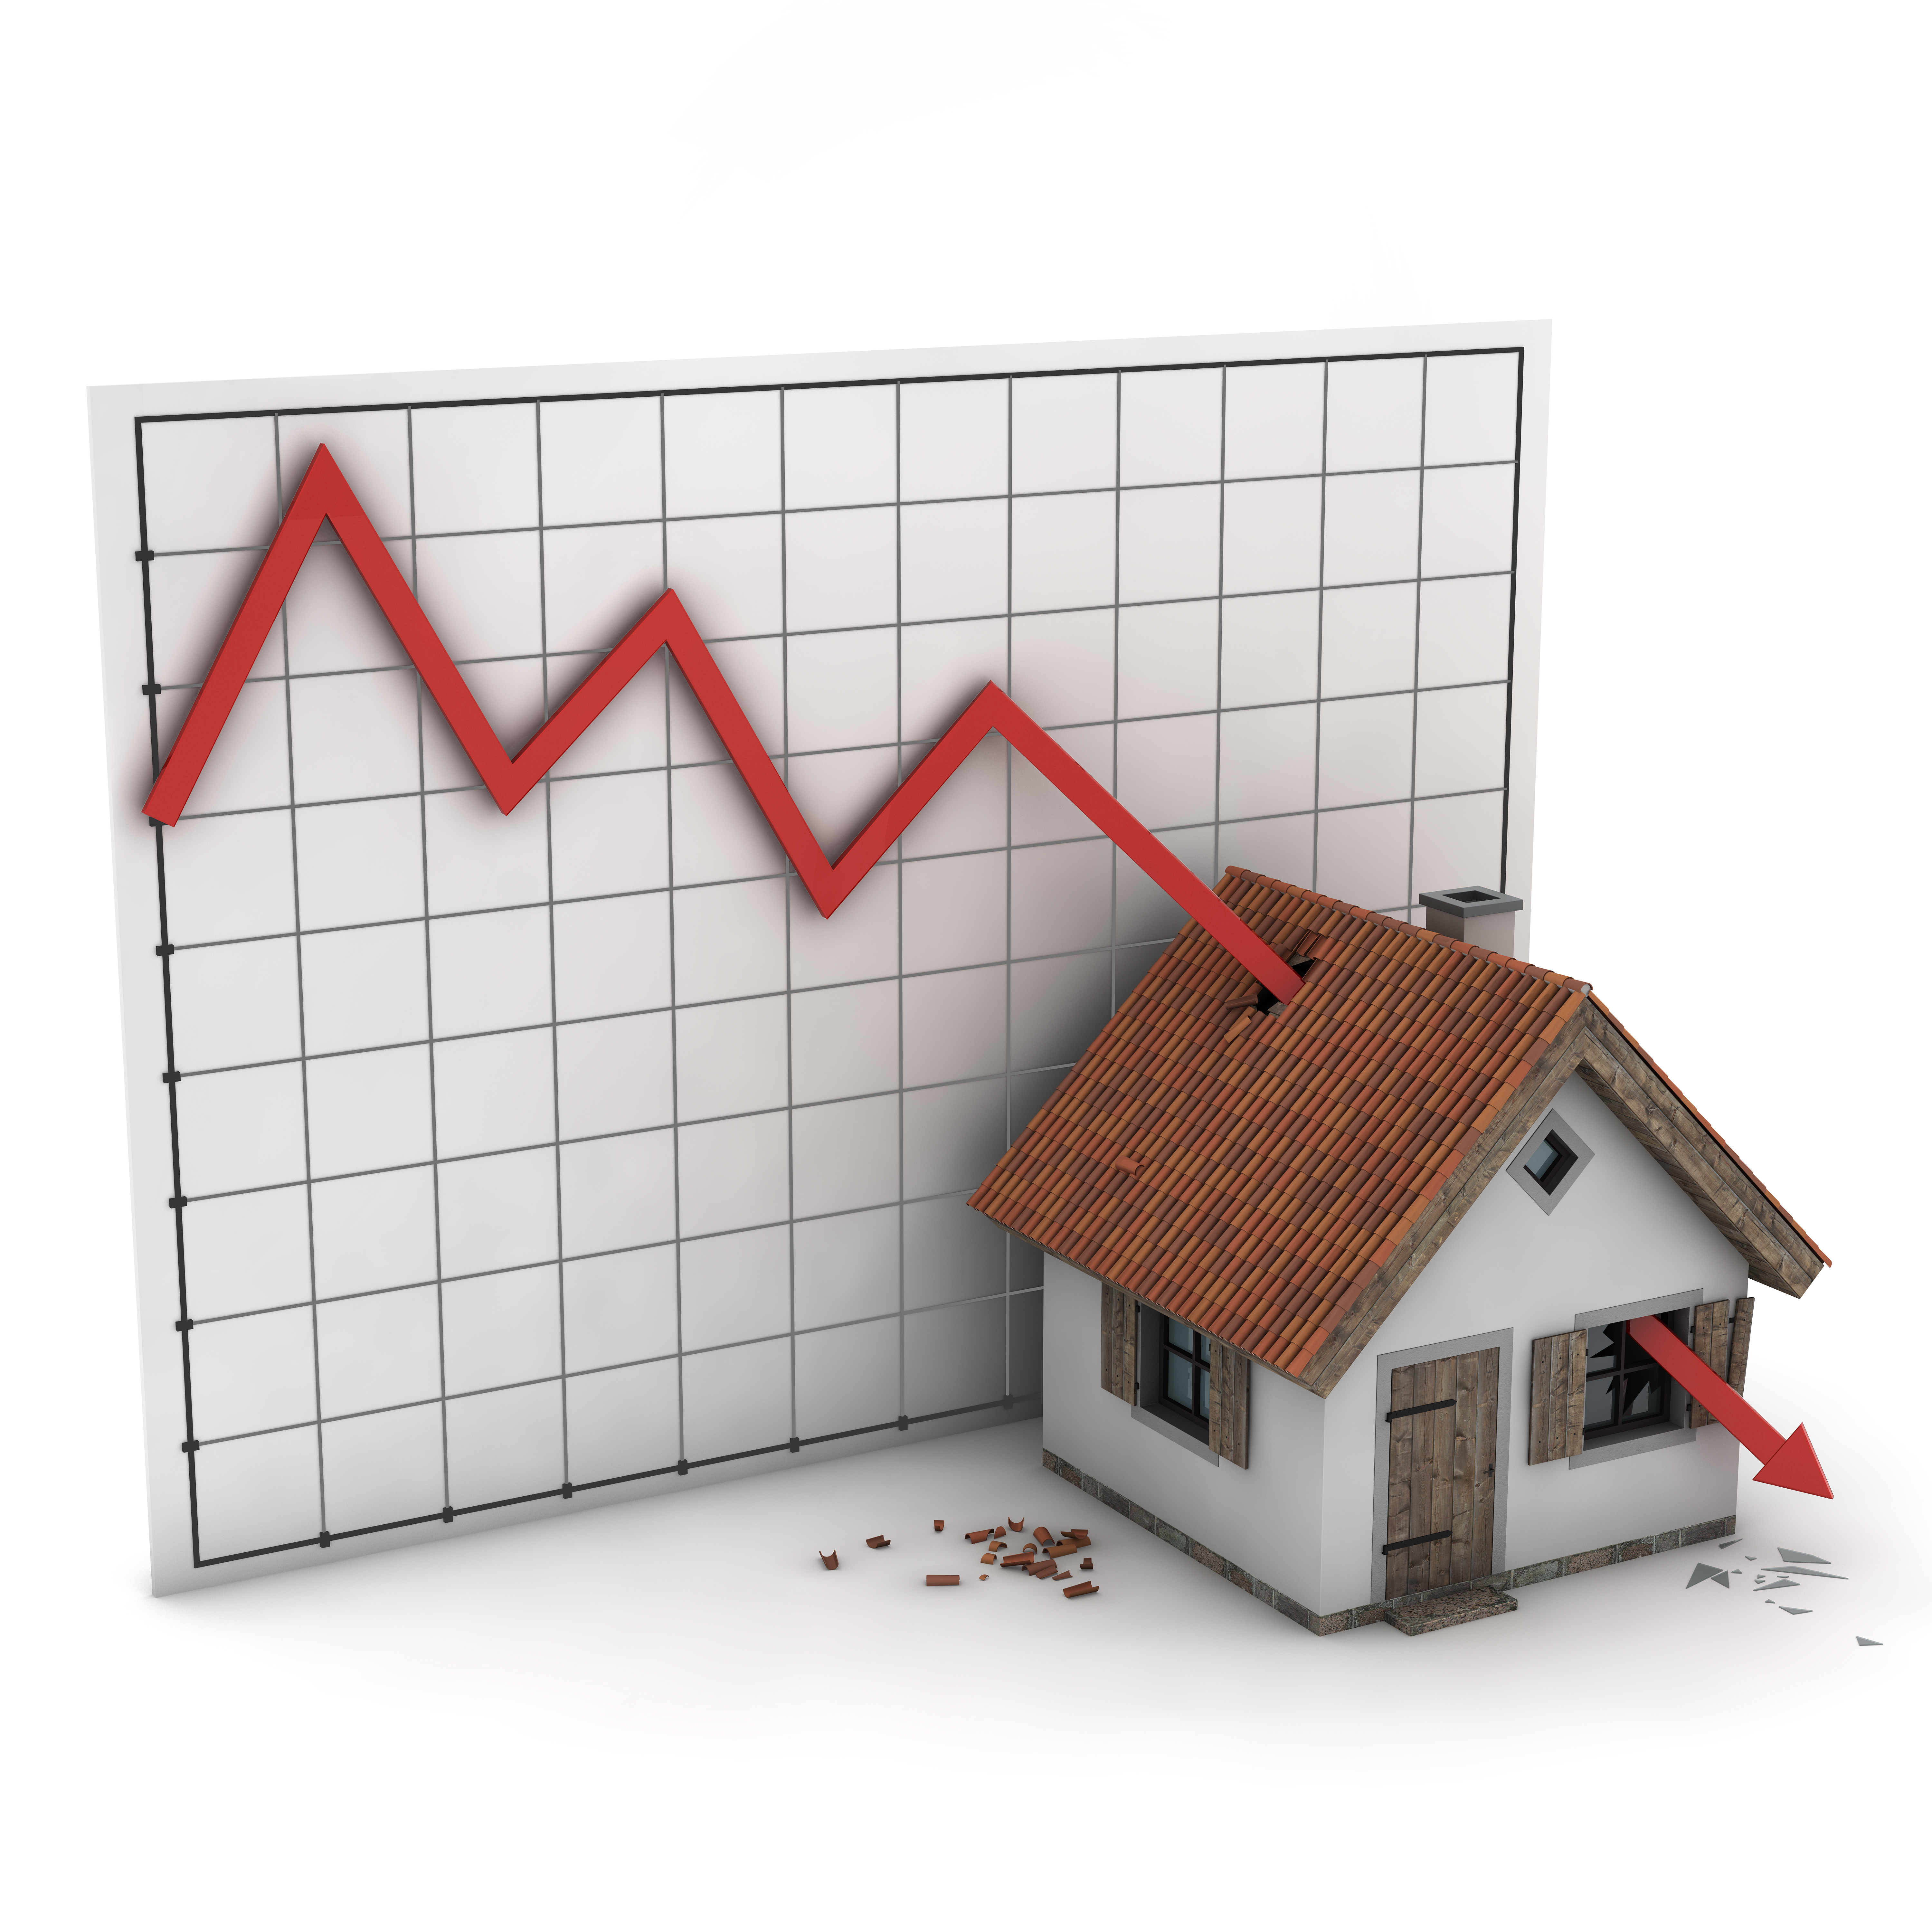 Повышение цены аренды. Рынок недвижимости. Ипотечный рынок. Обвал рынка недвижимости. Кризис жилищного строительства.